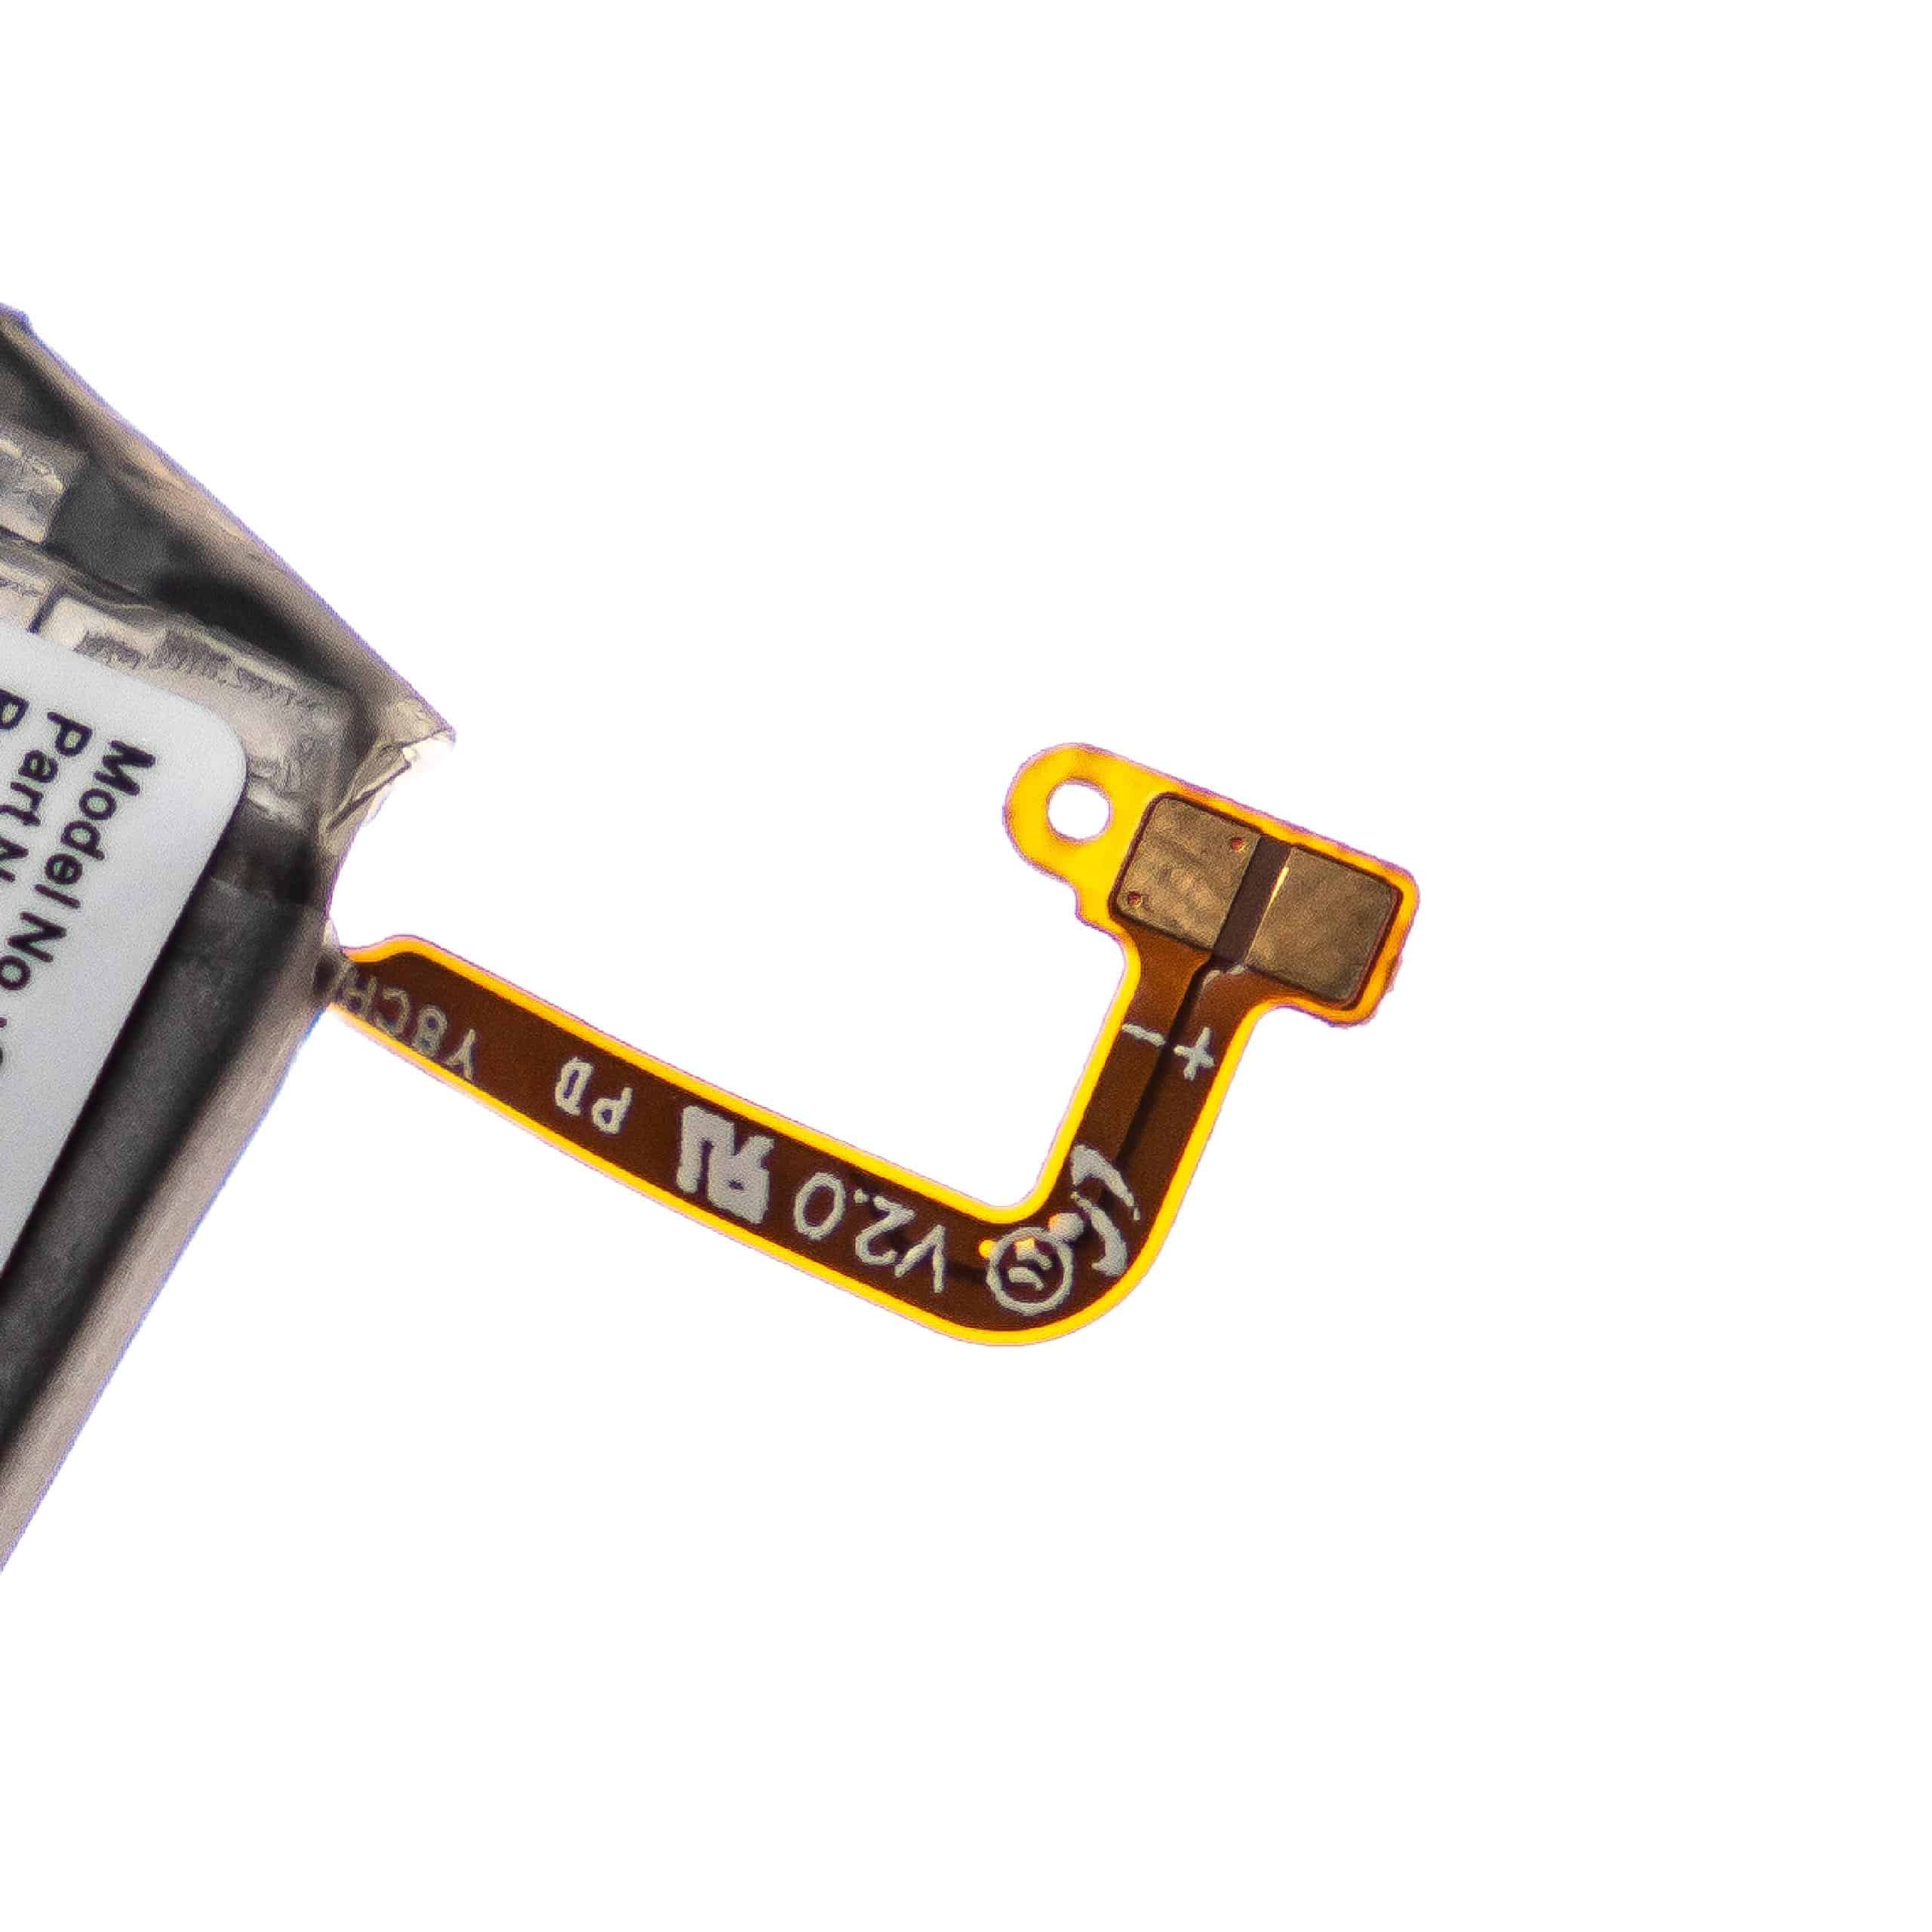 Batterie remplace Samsung EB-BR800ABU, GH43-04855A pour montre connectée - 450mAh 3,85V Li-polymère